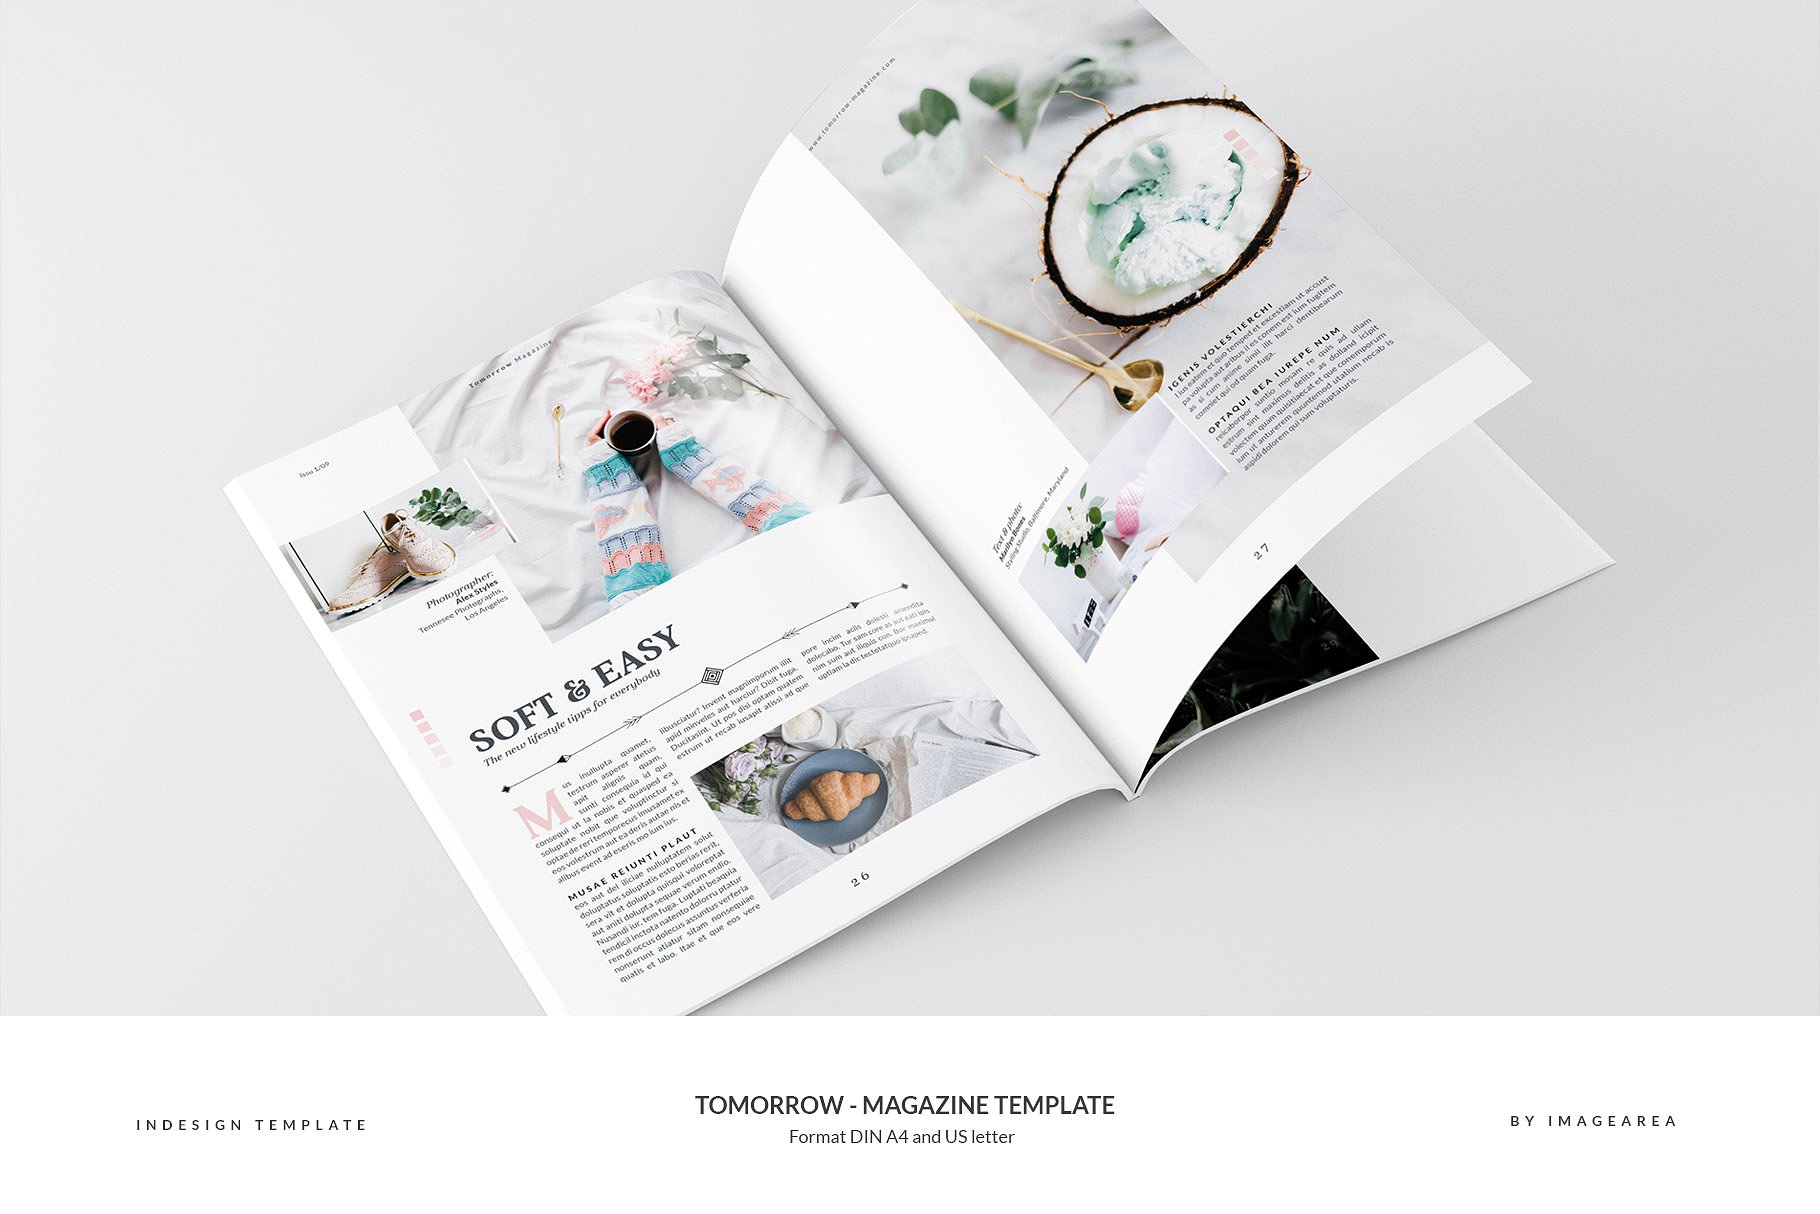 图文并茂排版优秀的专业杂志模板 Tomorrow – Magazine Template插图14